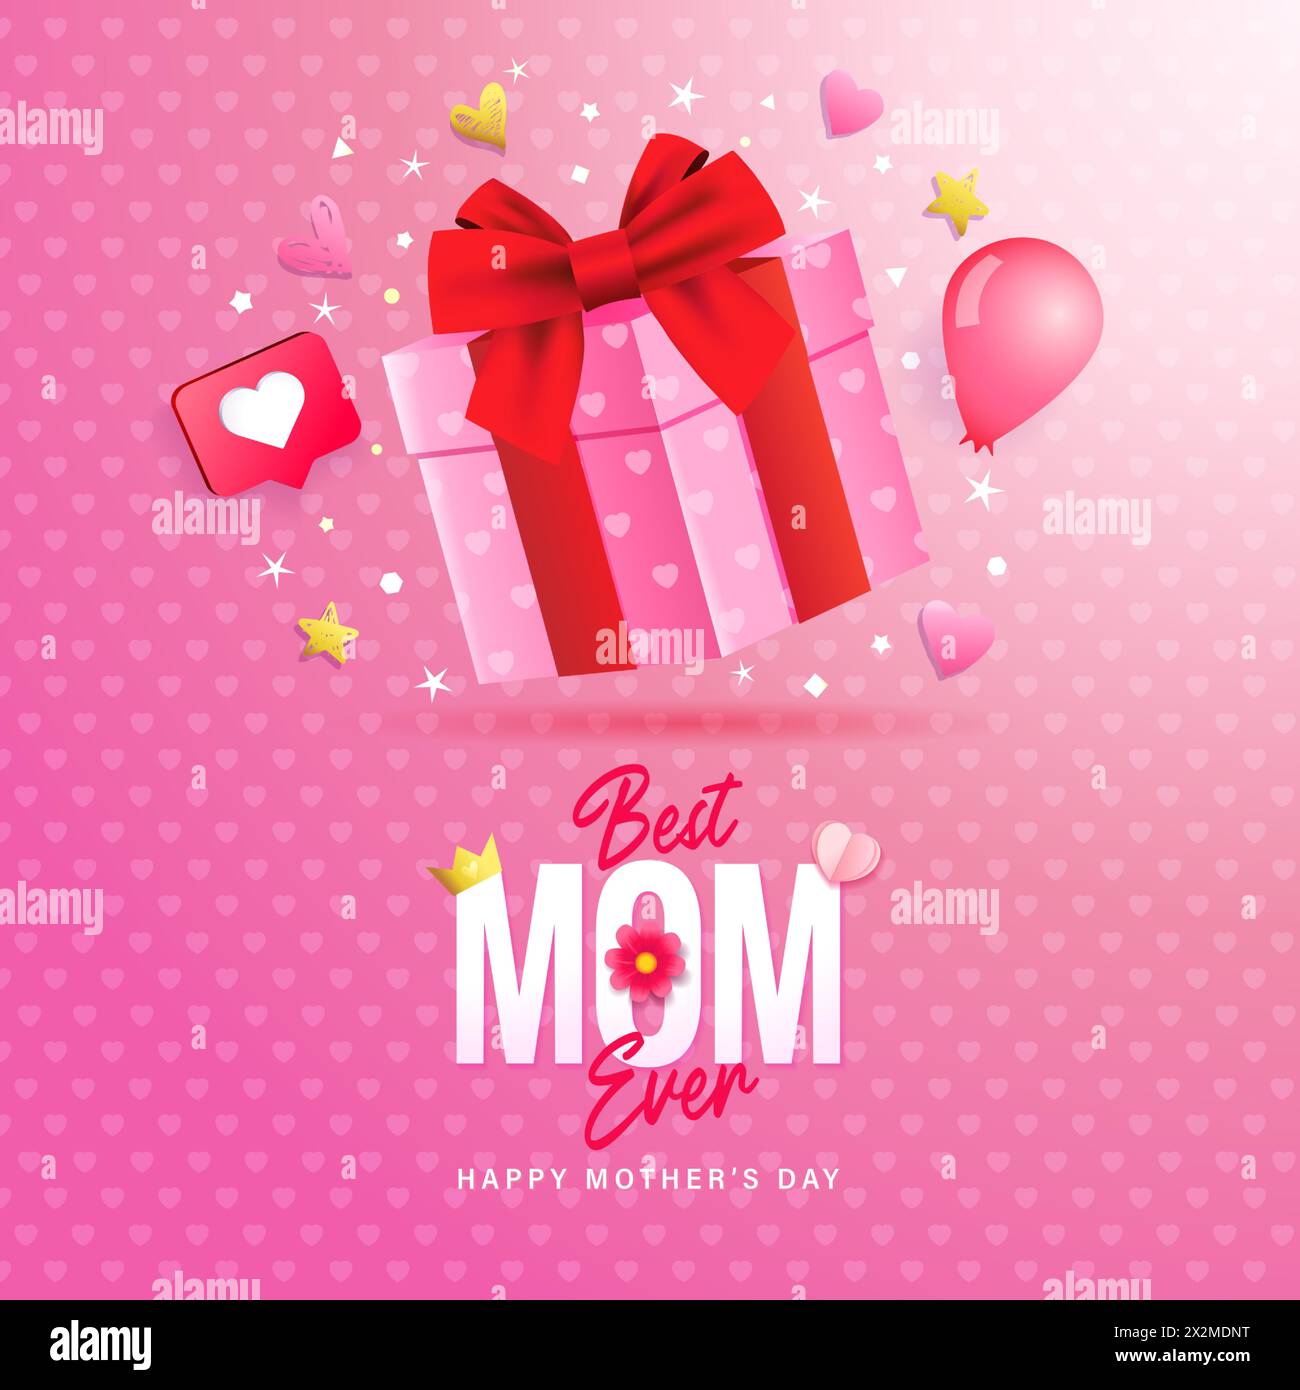 Design banner per la festa della mamma con confezione regalo 3d per la migliore MAMMA di sempre. Bellissimo modello pubblicitario per la festa della mamma. Illustrazione vettoriale Illustrazione Vettoriale